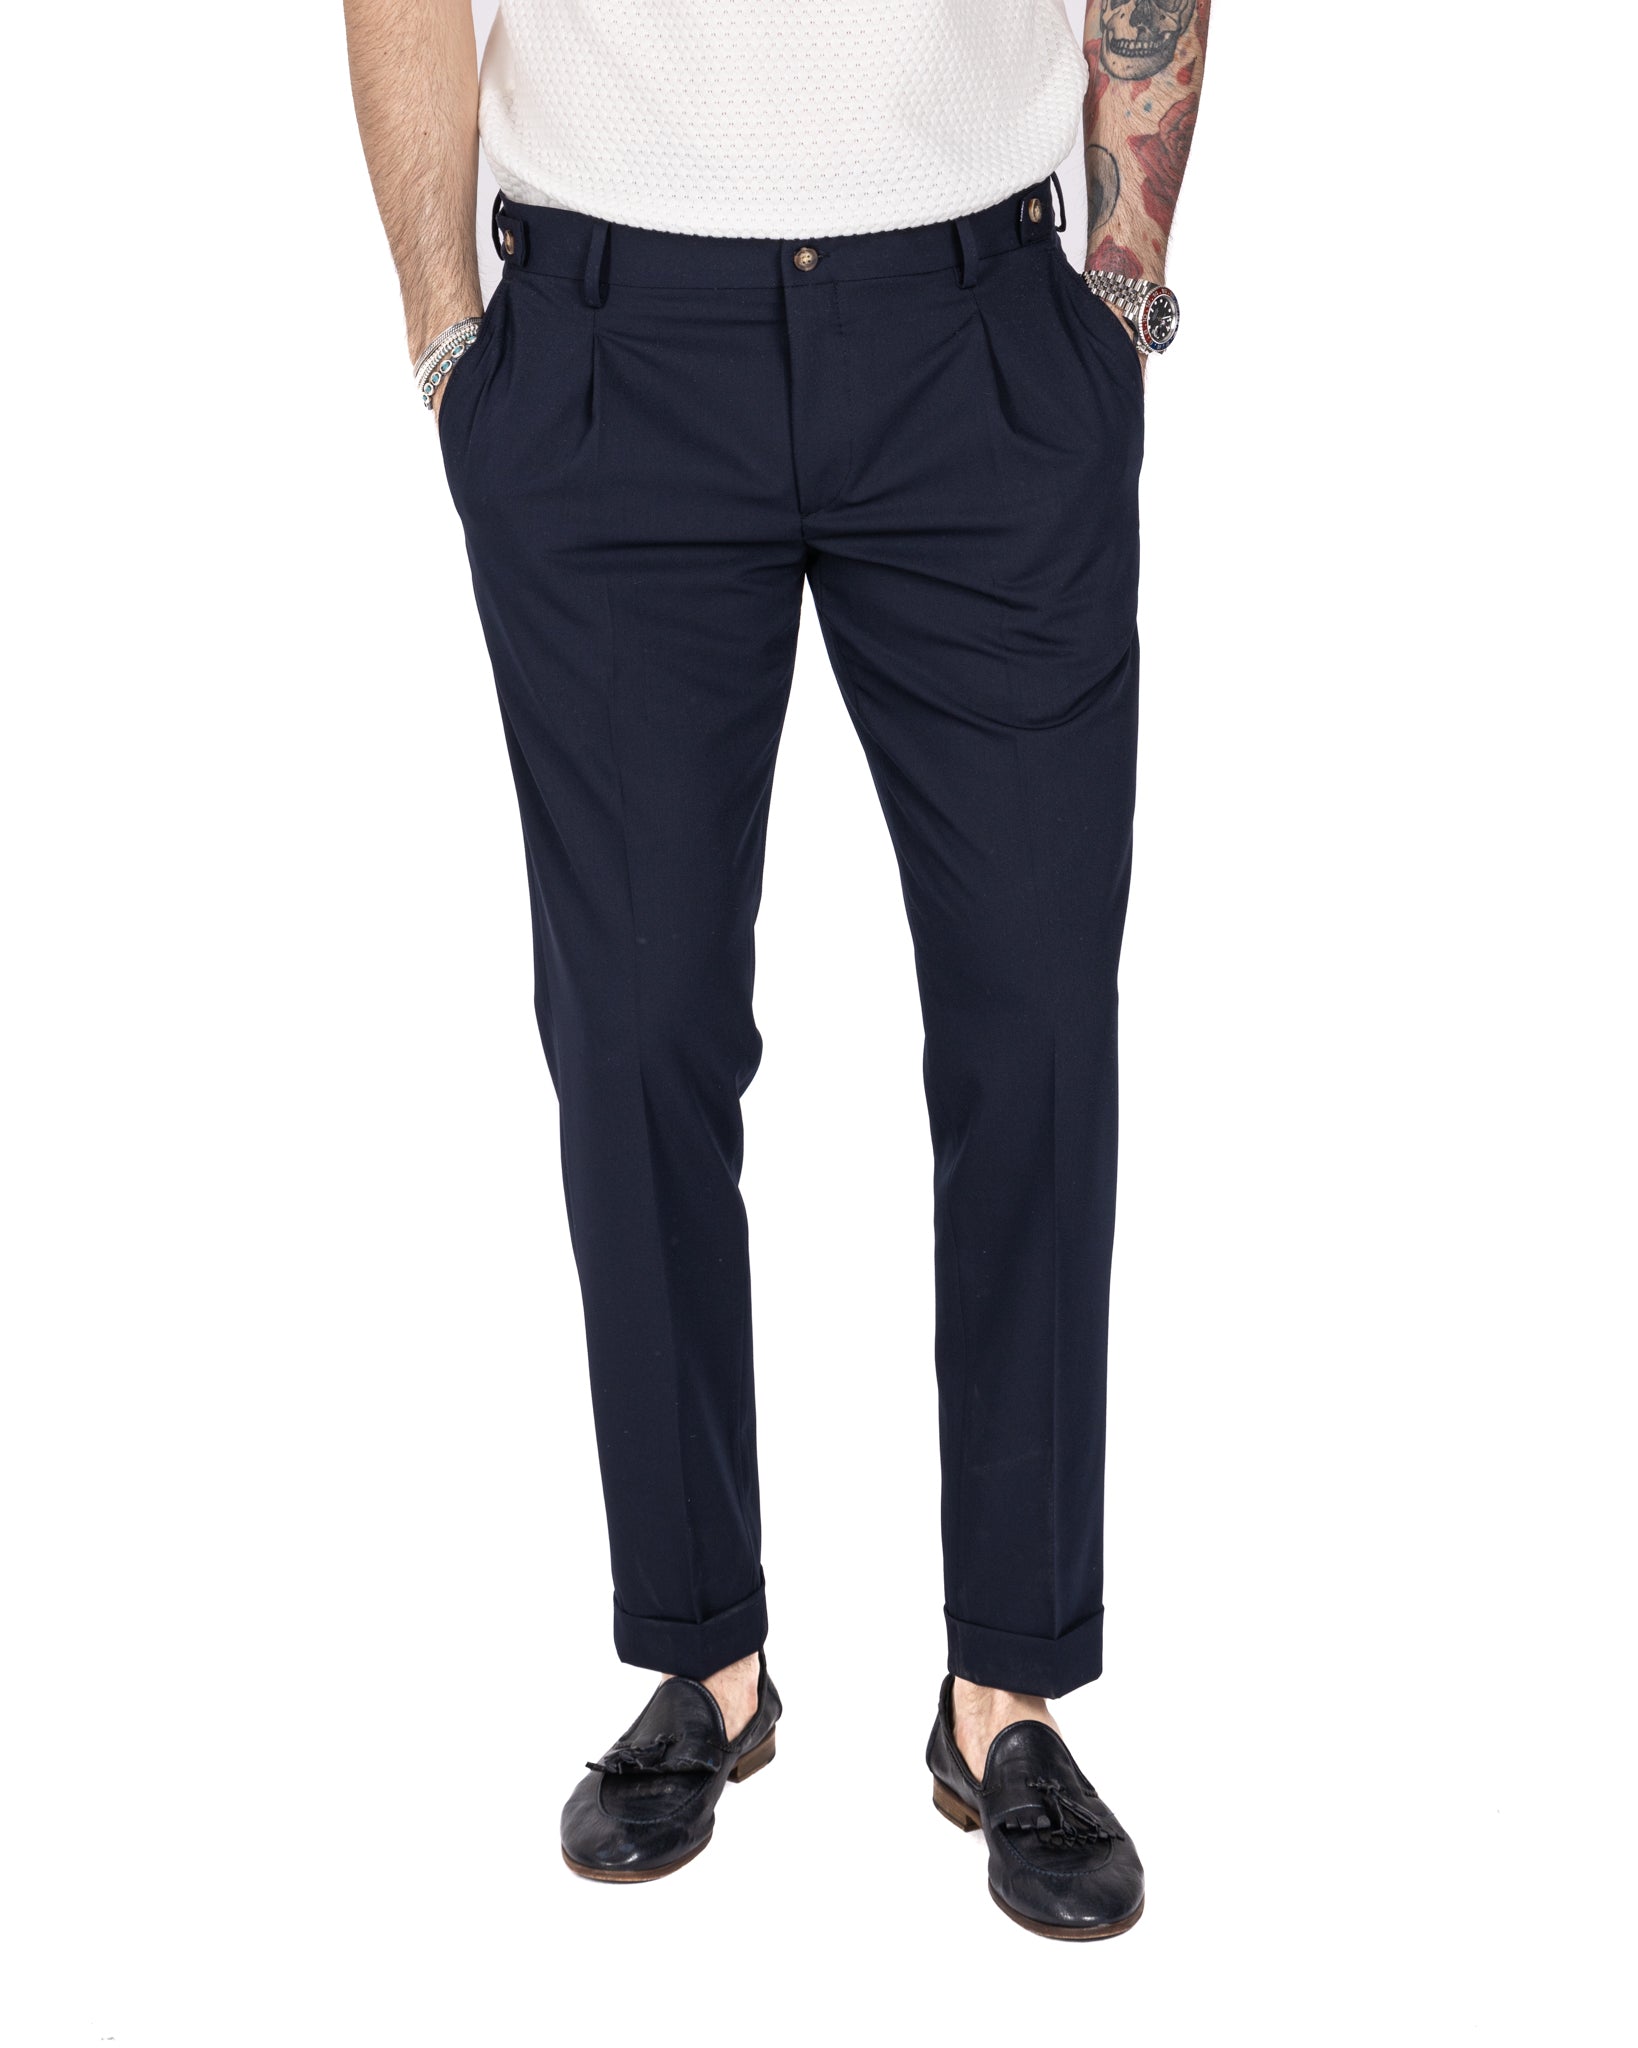 Milan - basic blue trousers